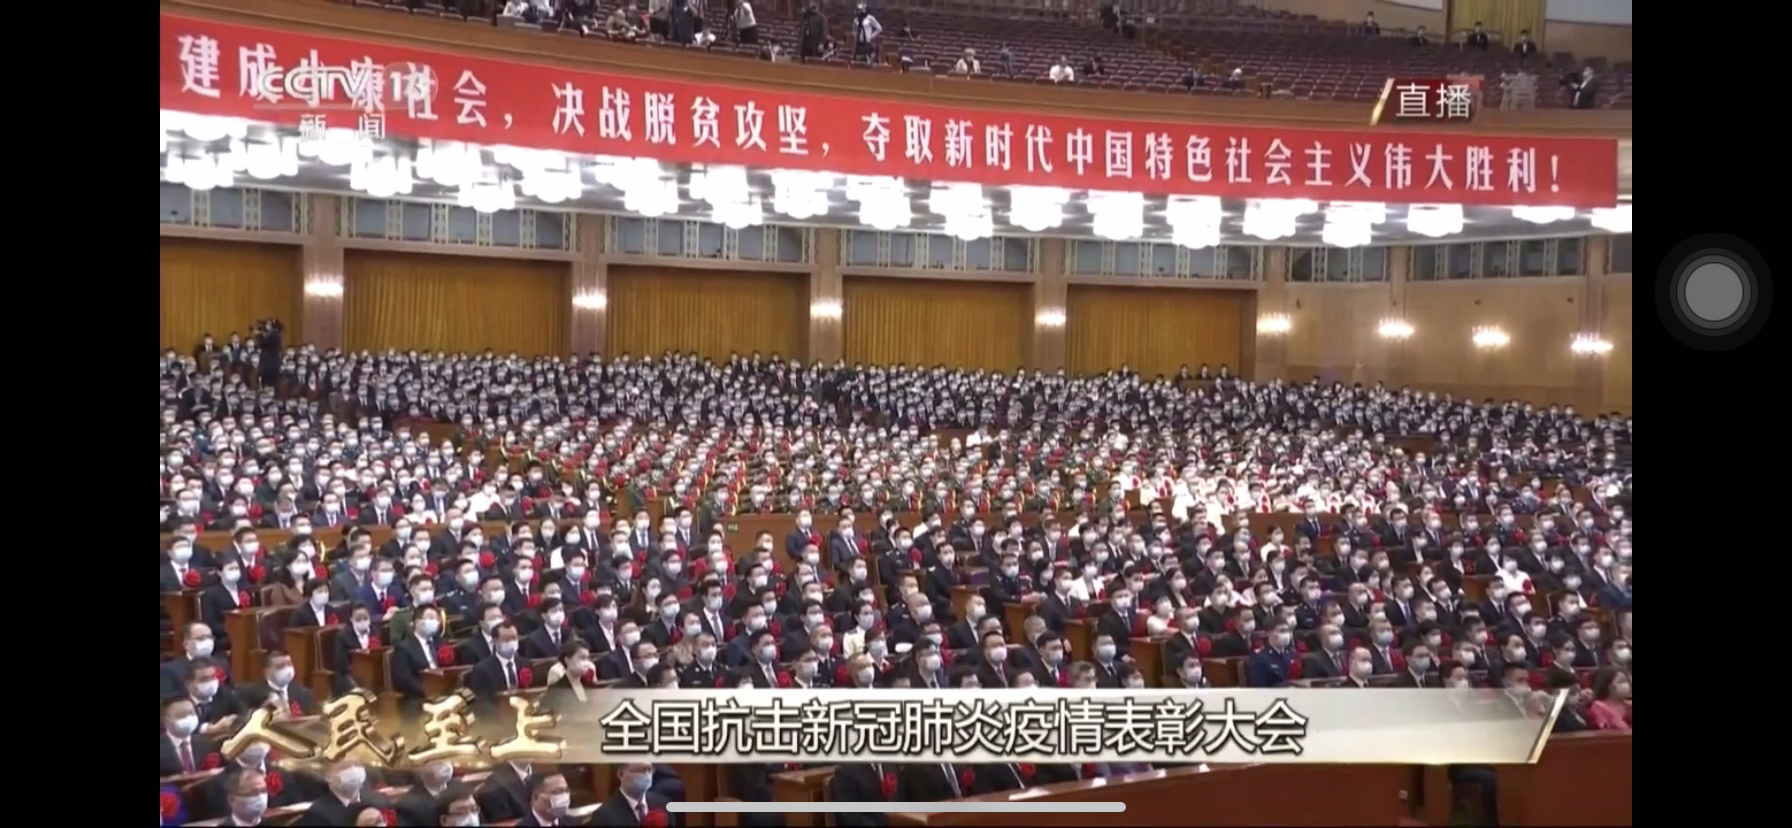 全国抗击新冠肺炎疫情表彰大会在北京人民大会堂隆重举行。